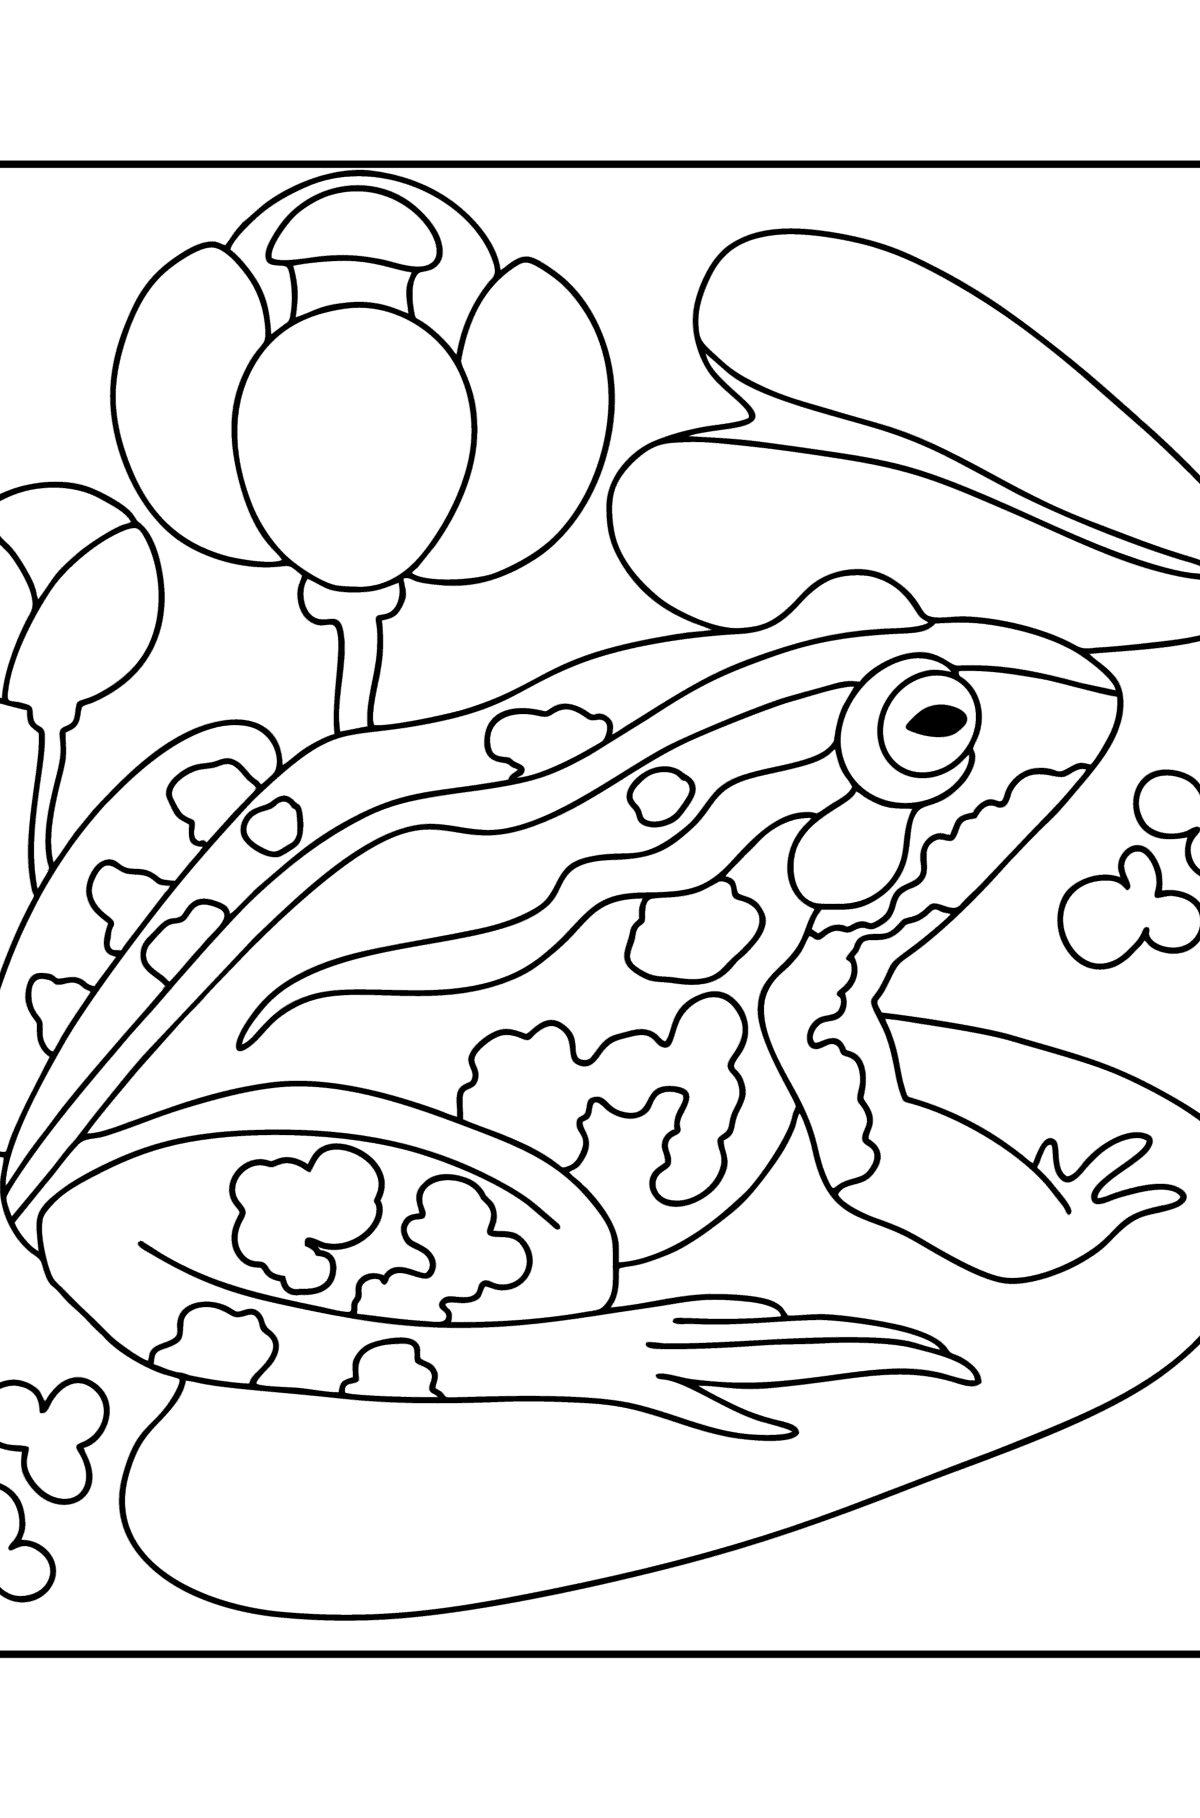 Раскраска Лягушка на озере - Картинки для Детей